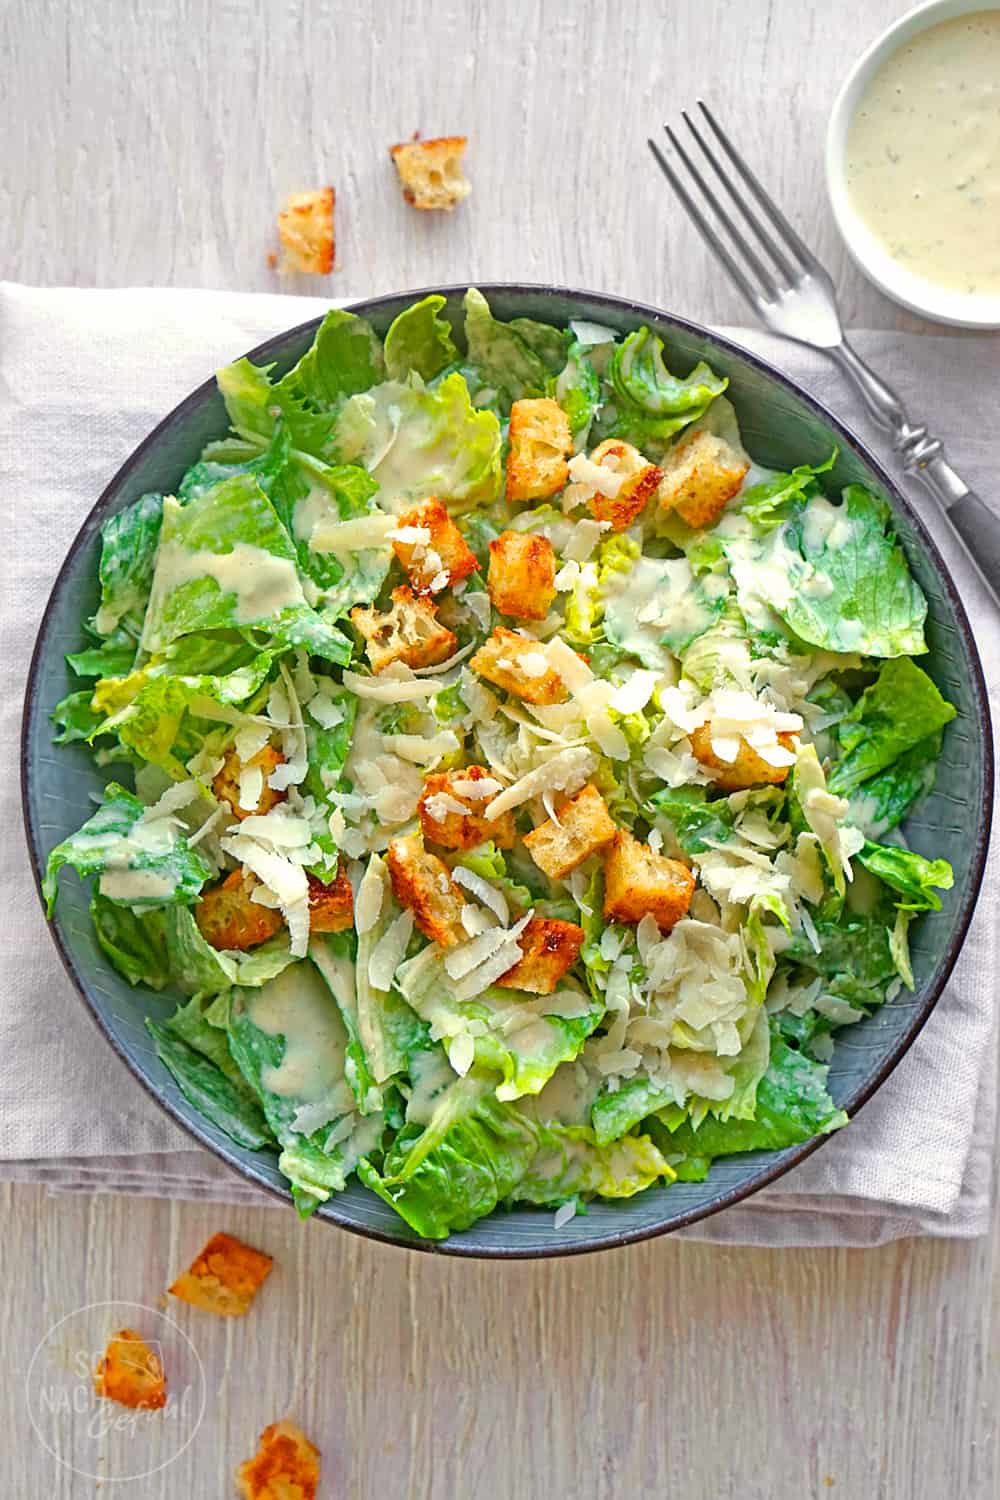 Caesar Salad mit frischen Croutons